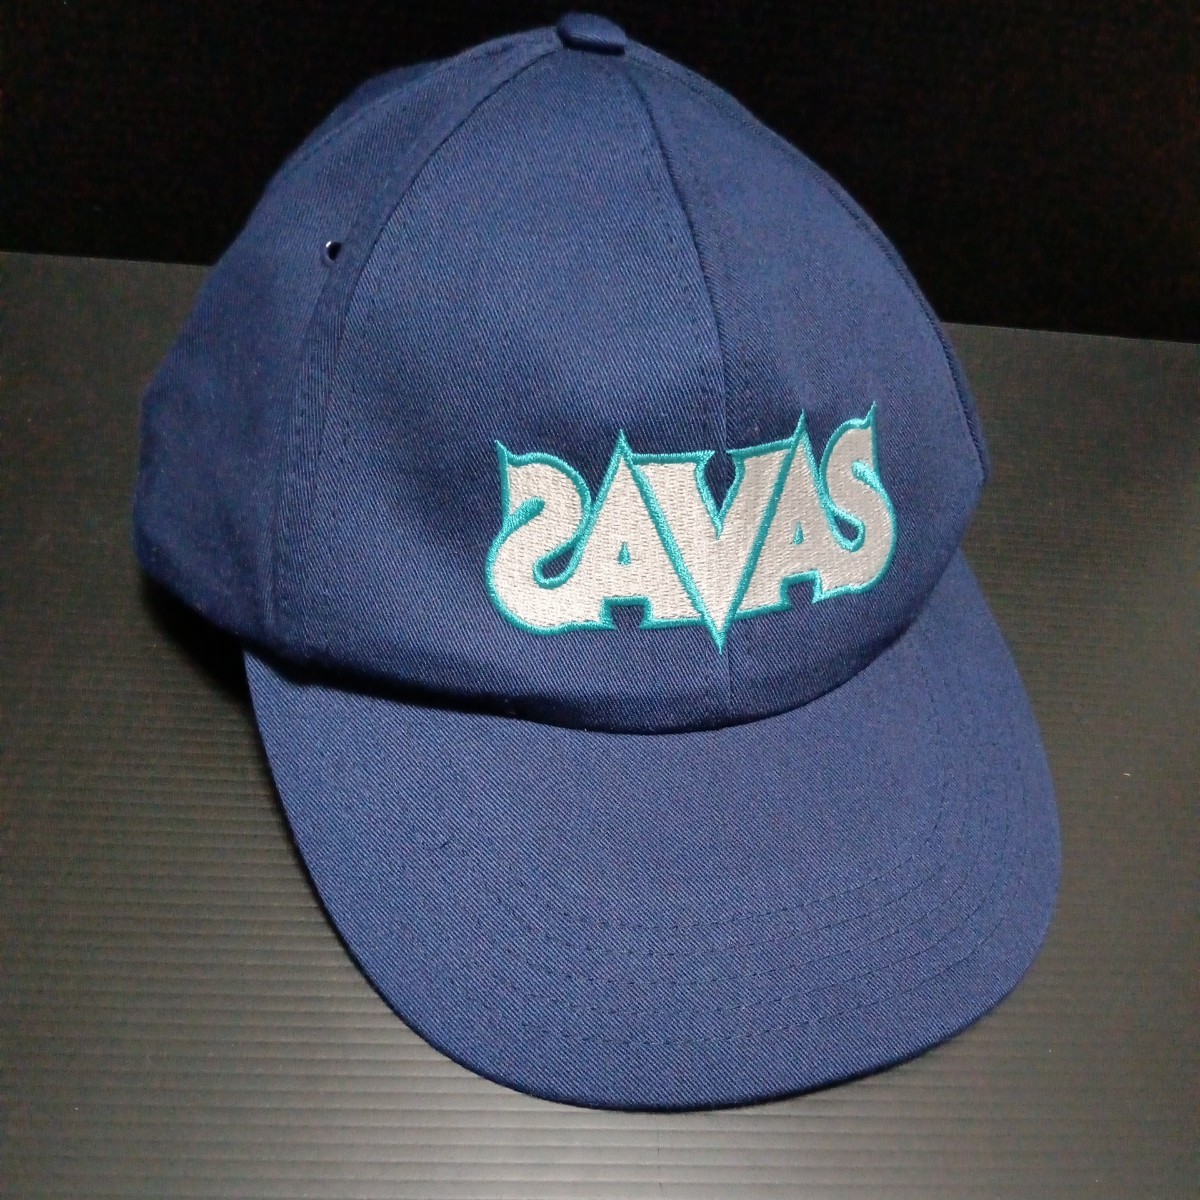 ● ザバス「SAVAS キャップ」刺繍 帽子